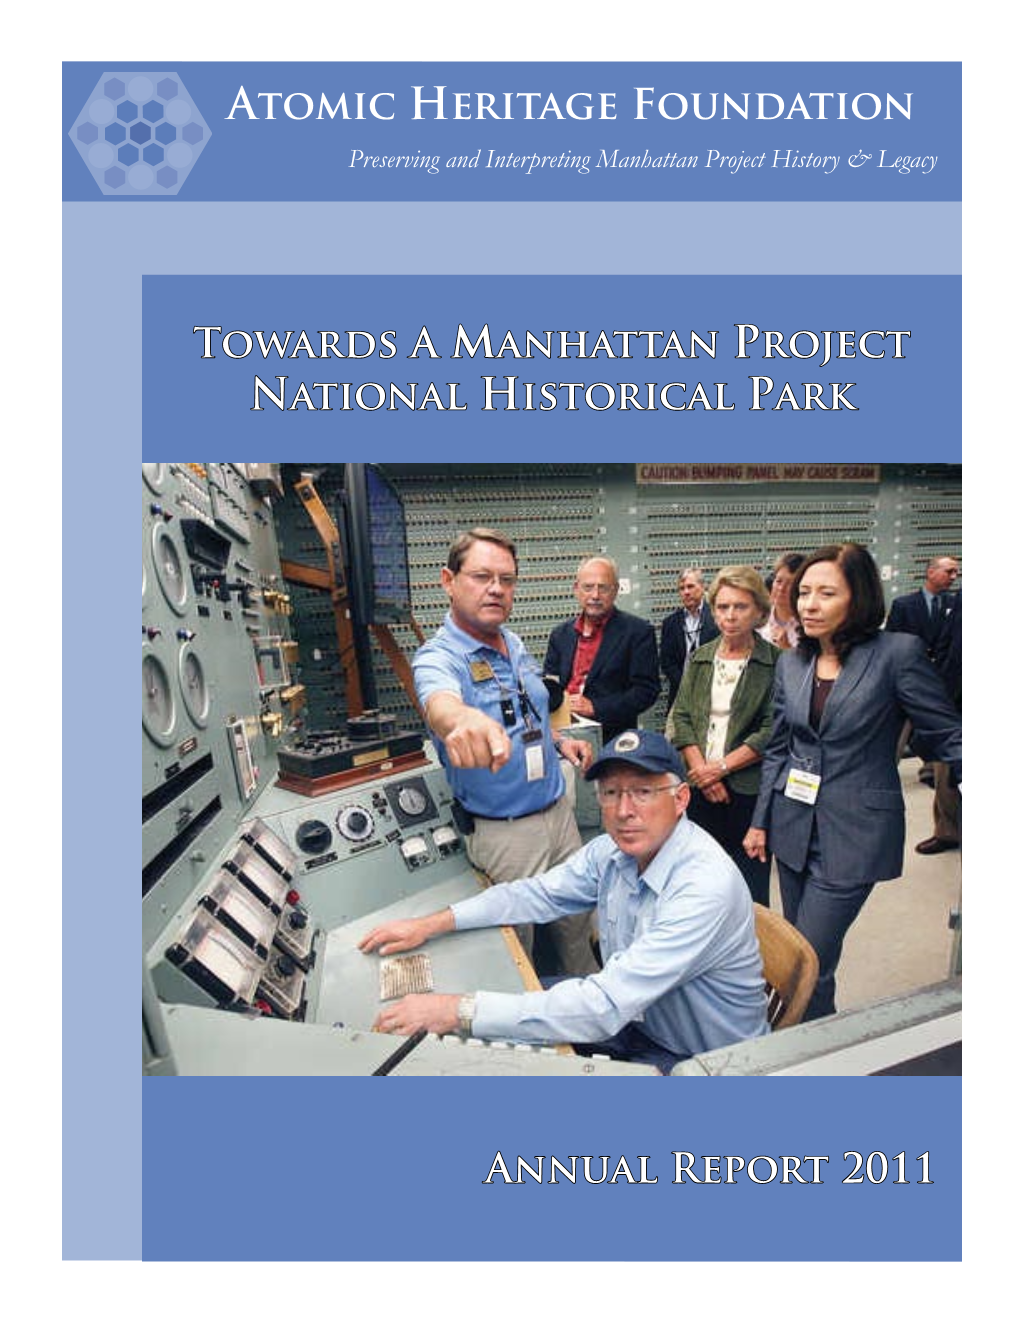 Annual Report 2011.Pdf